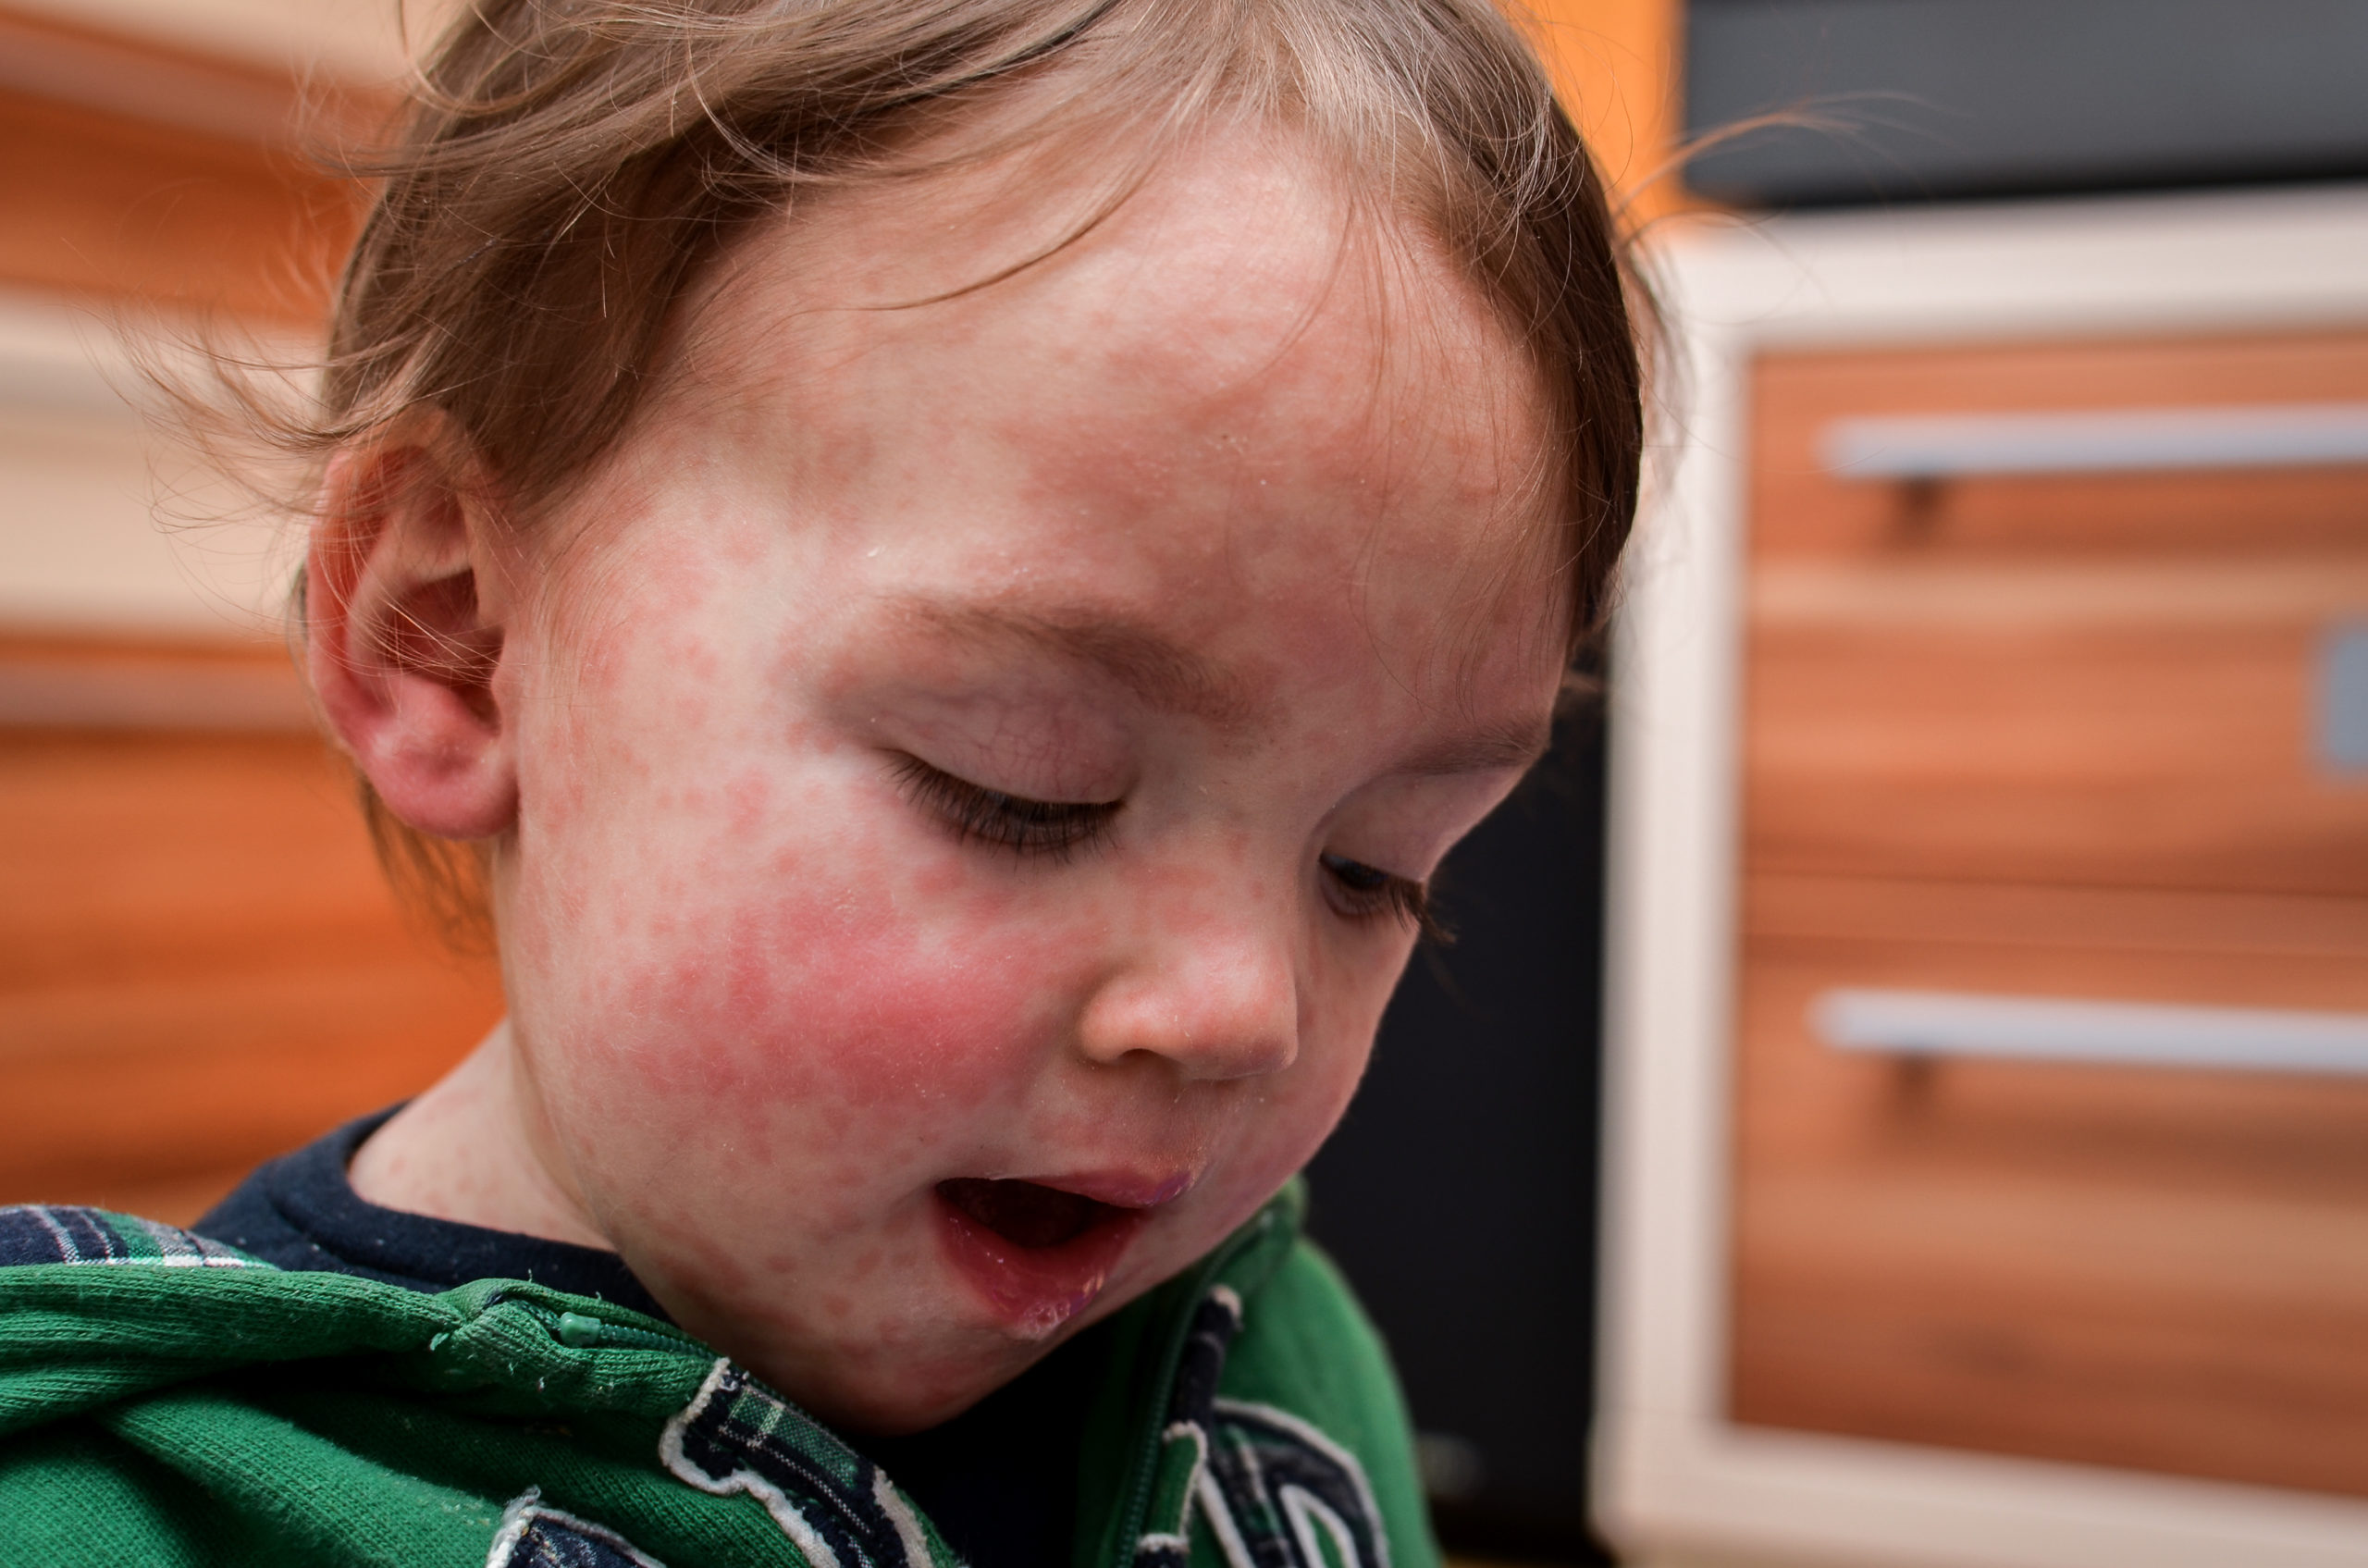 Children viral disease or allergies. Red measles rash on baby.